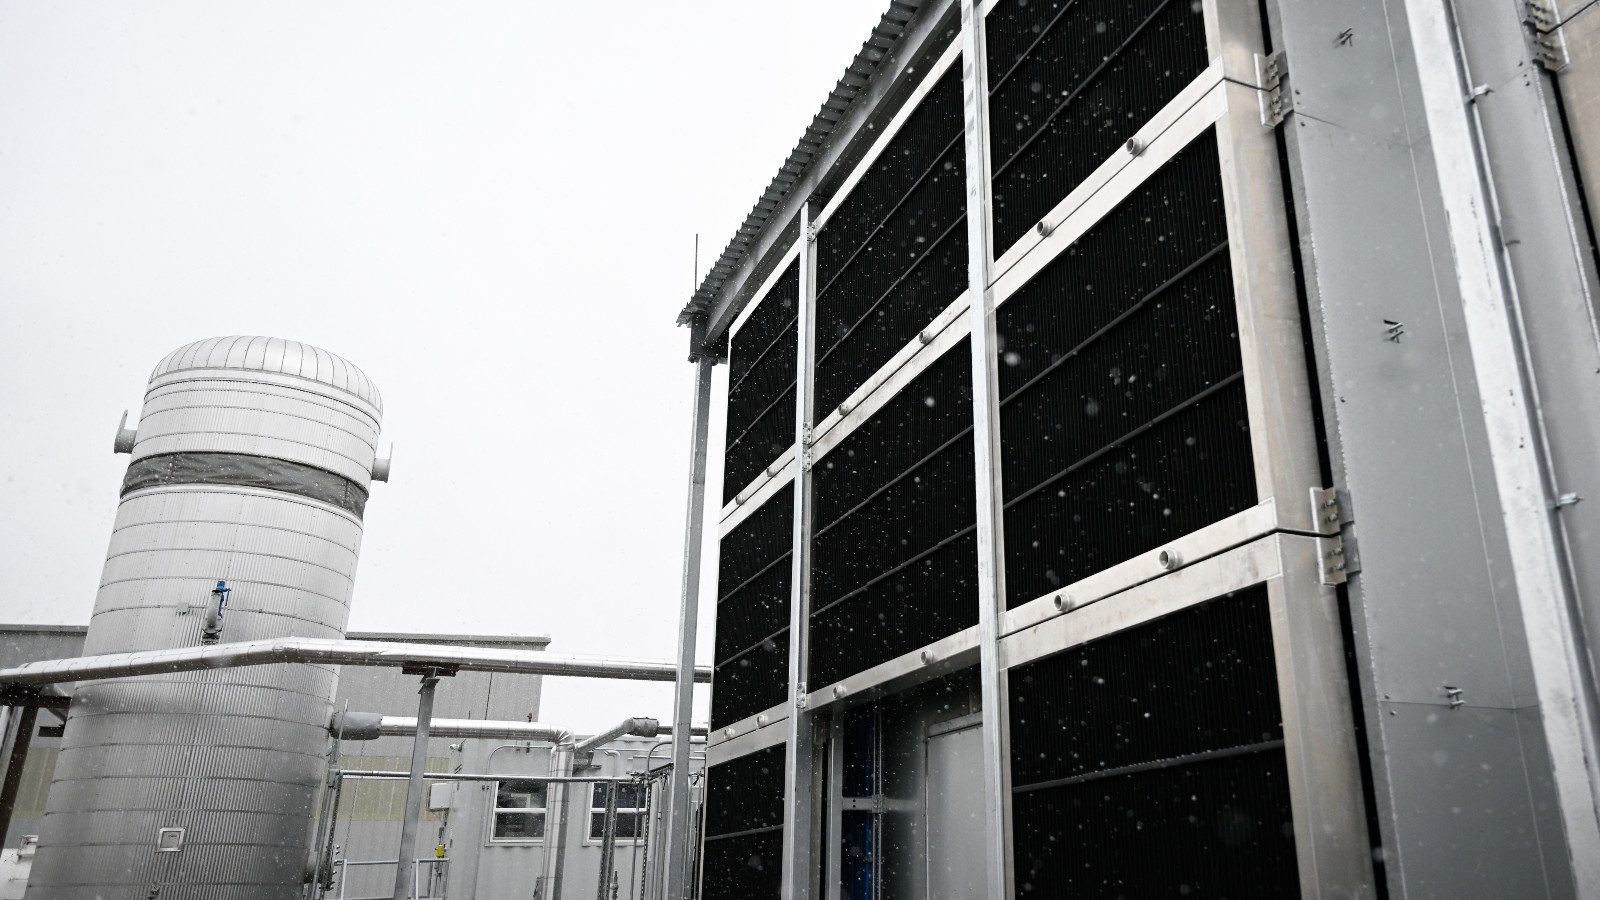 An industrial facility against a gray sky.